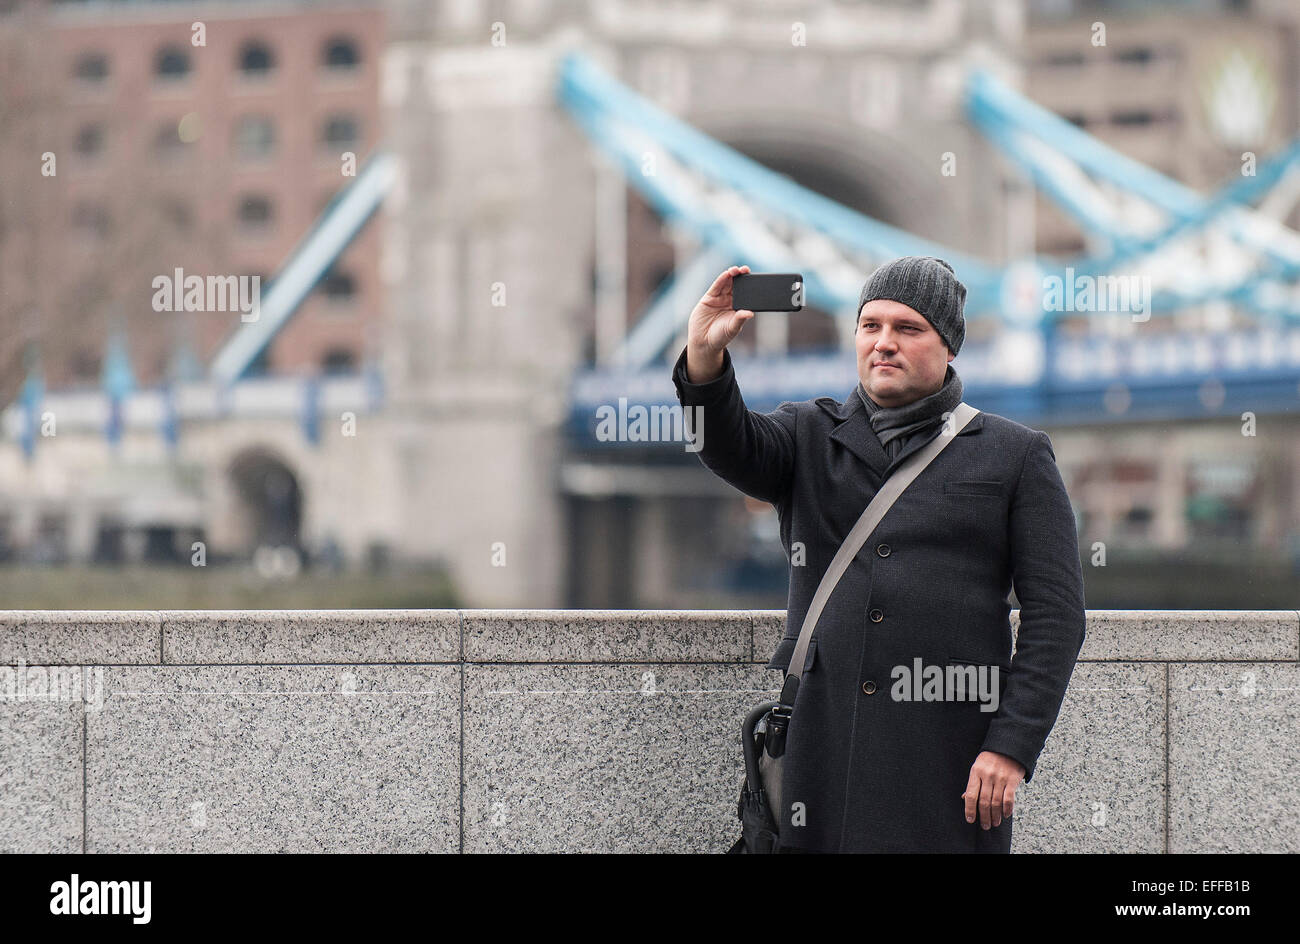 Un homme prenant une avec un téléphone mobile selfies Banque D'Images